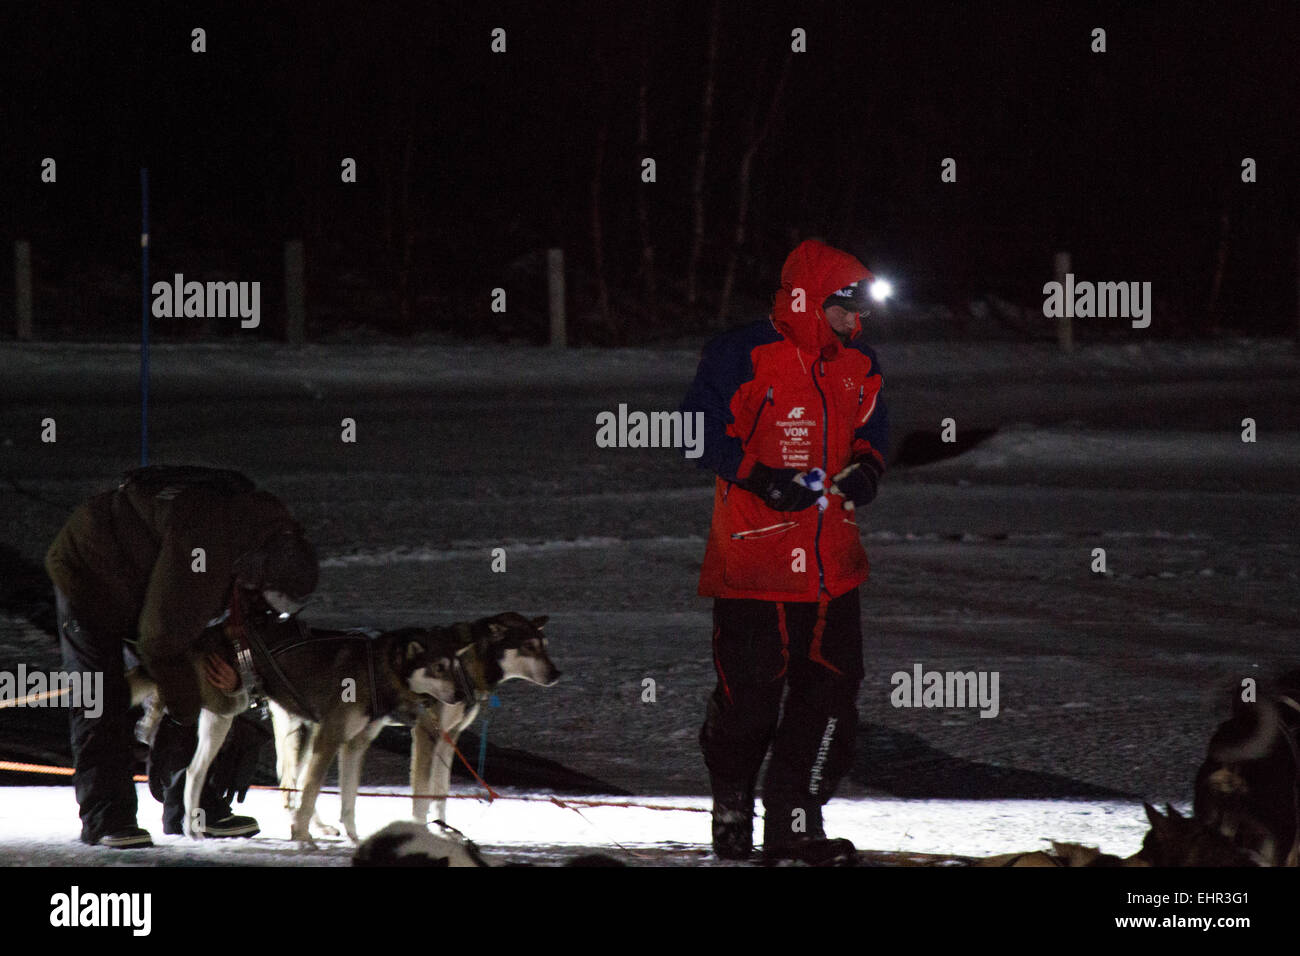 Aventurero noruego, Lars Monsen, llegando en el checkpoint Varangerbotn durante la carrera de perros de Finnmark 2015 Foto de stock